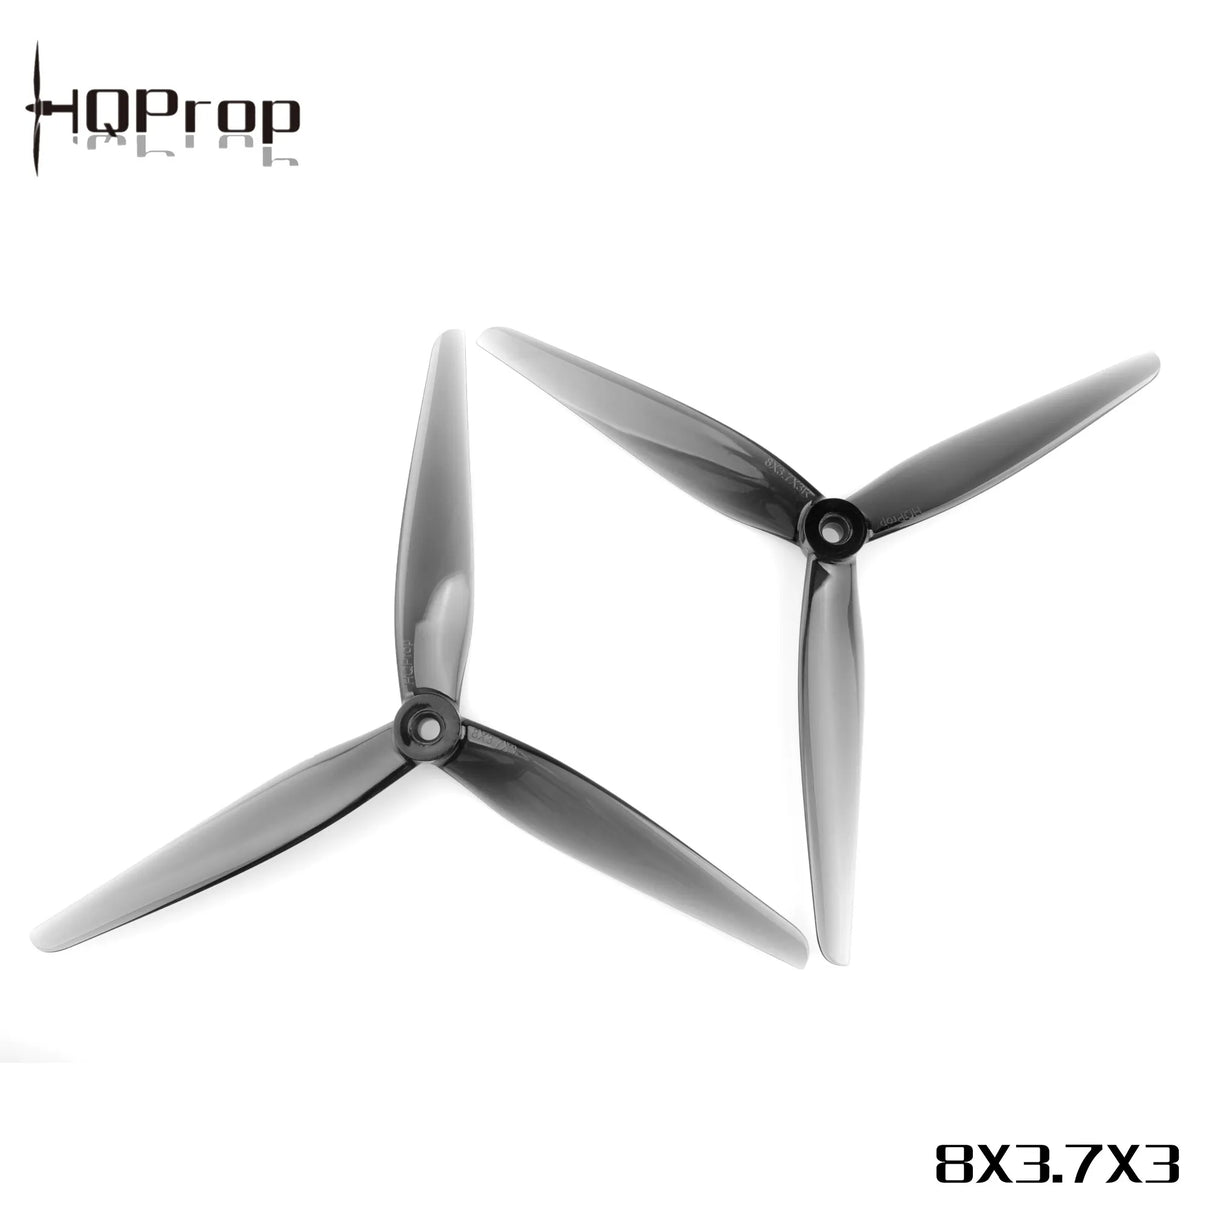 HQProp 8X3.7X3 Grey Propellers - DroneDynamics.ca